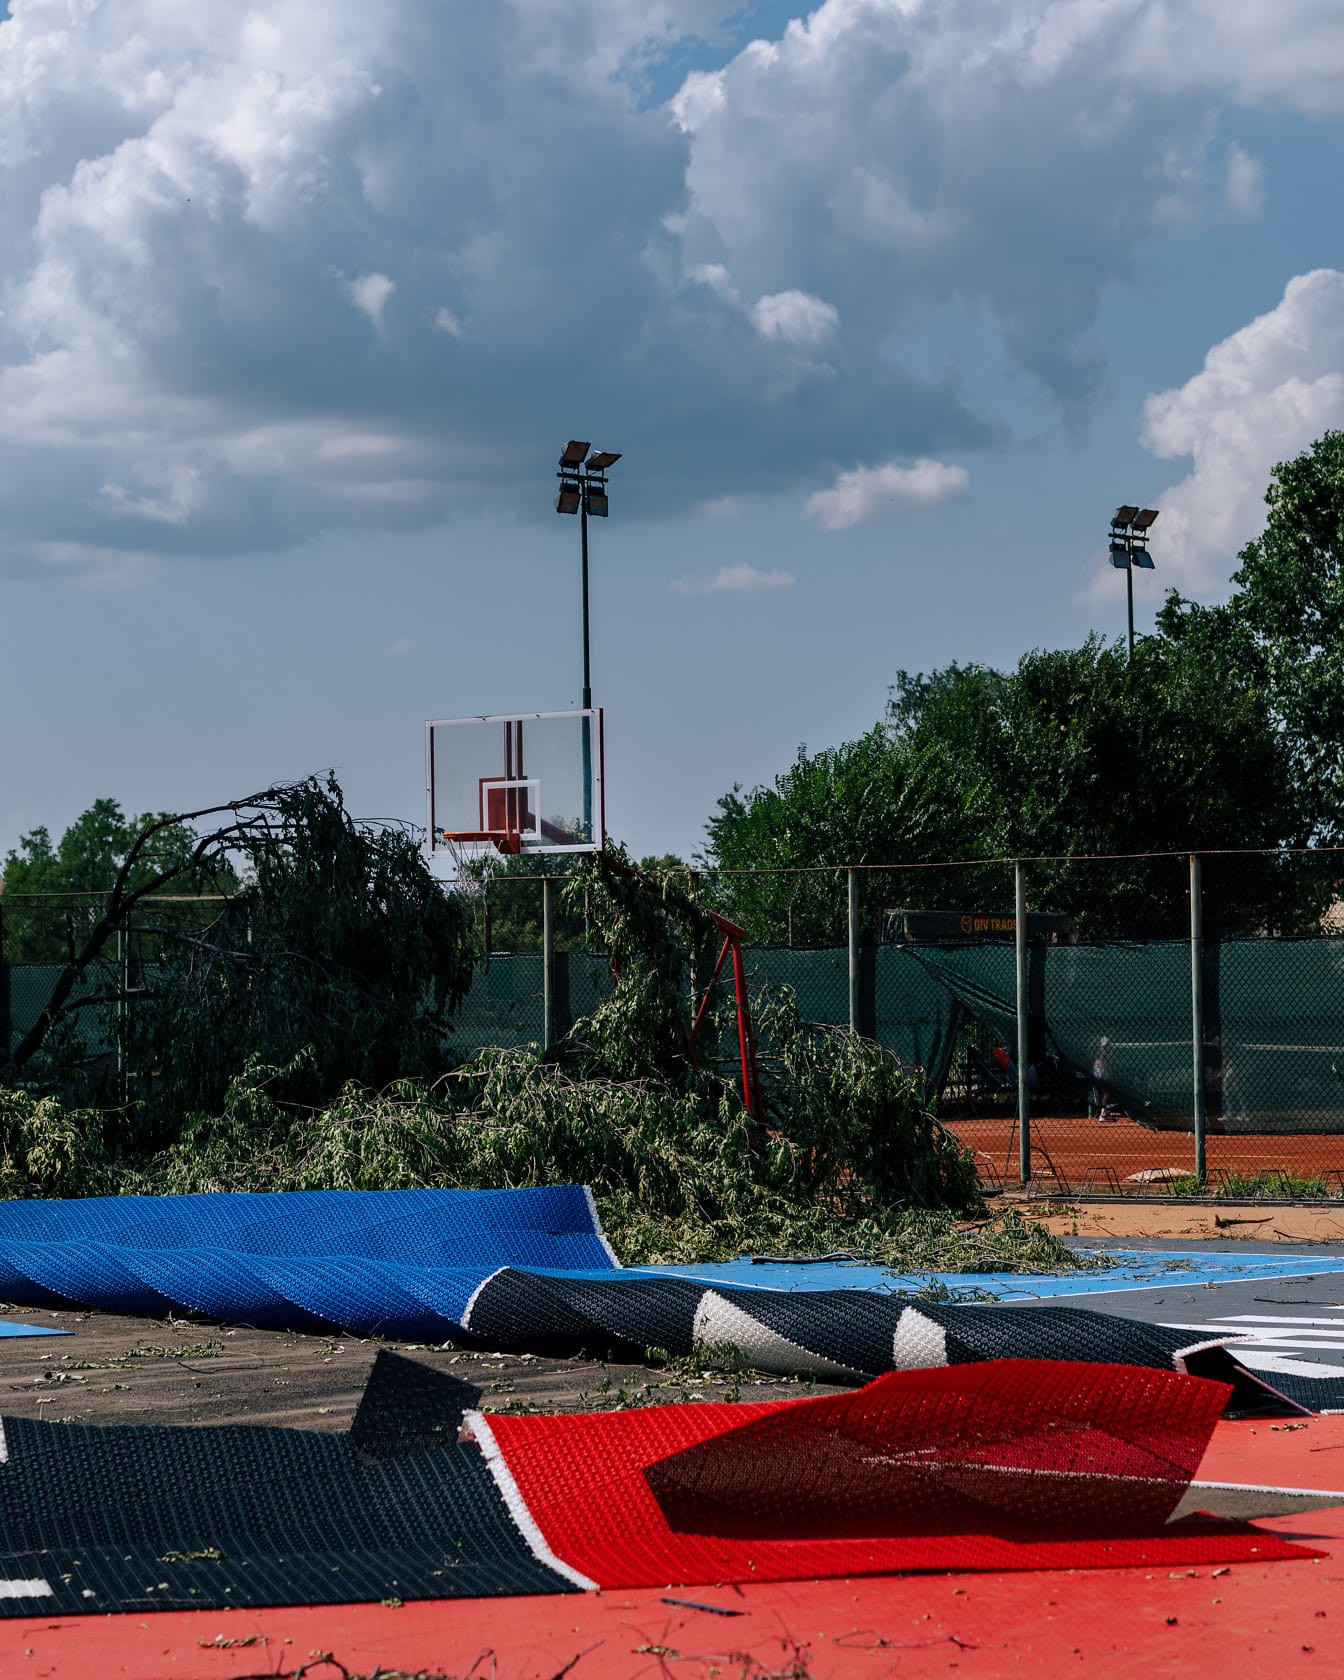 Orkaanwind beschadigt bomen en basketbalveld